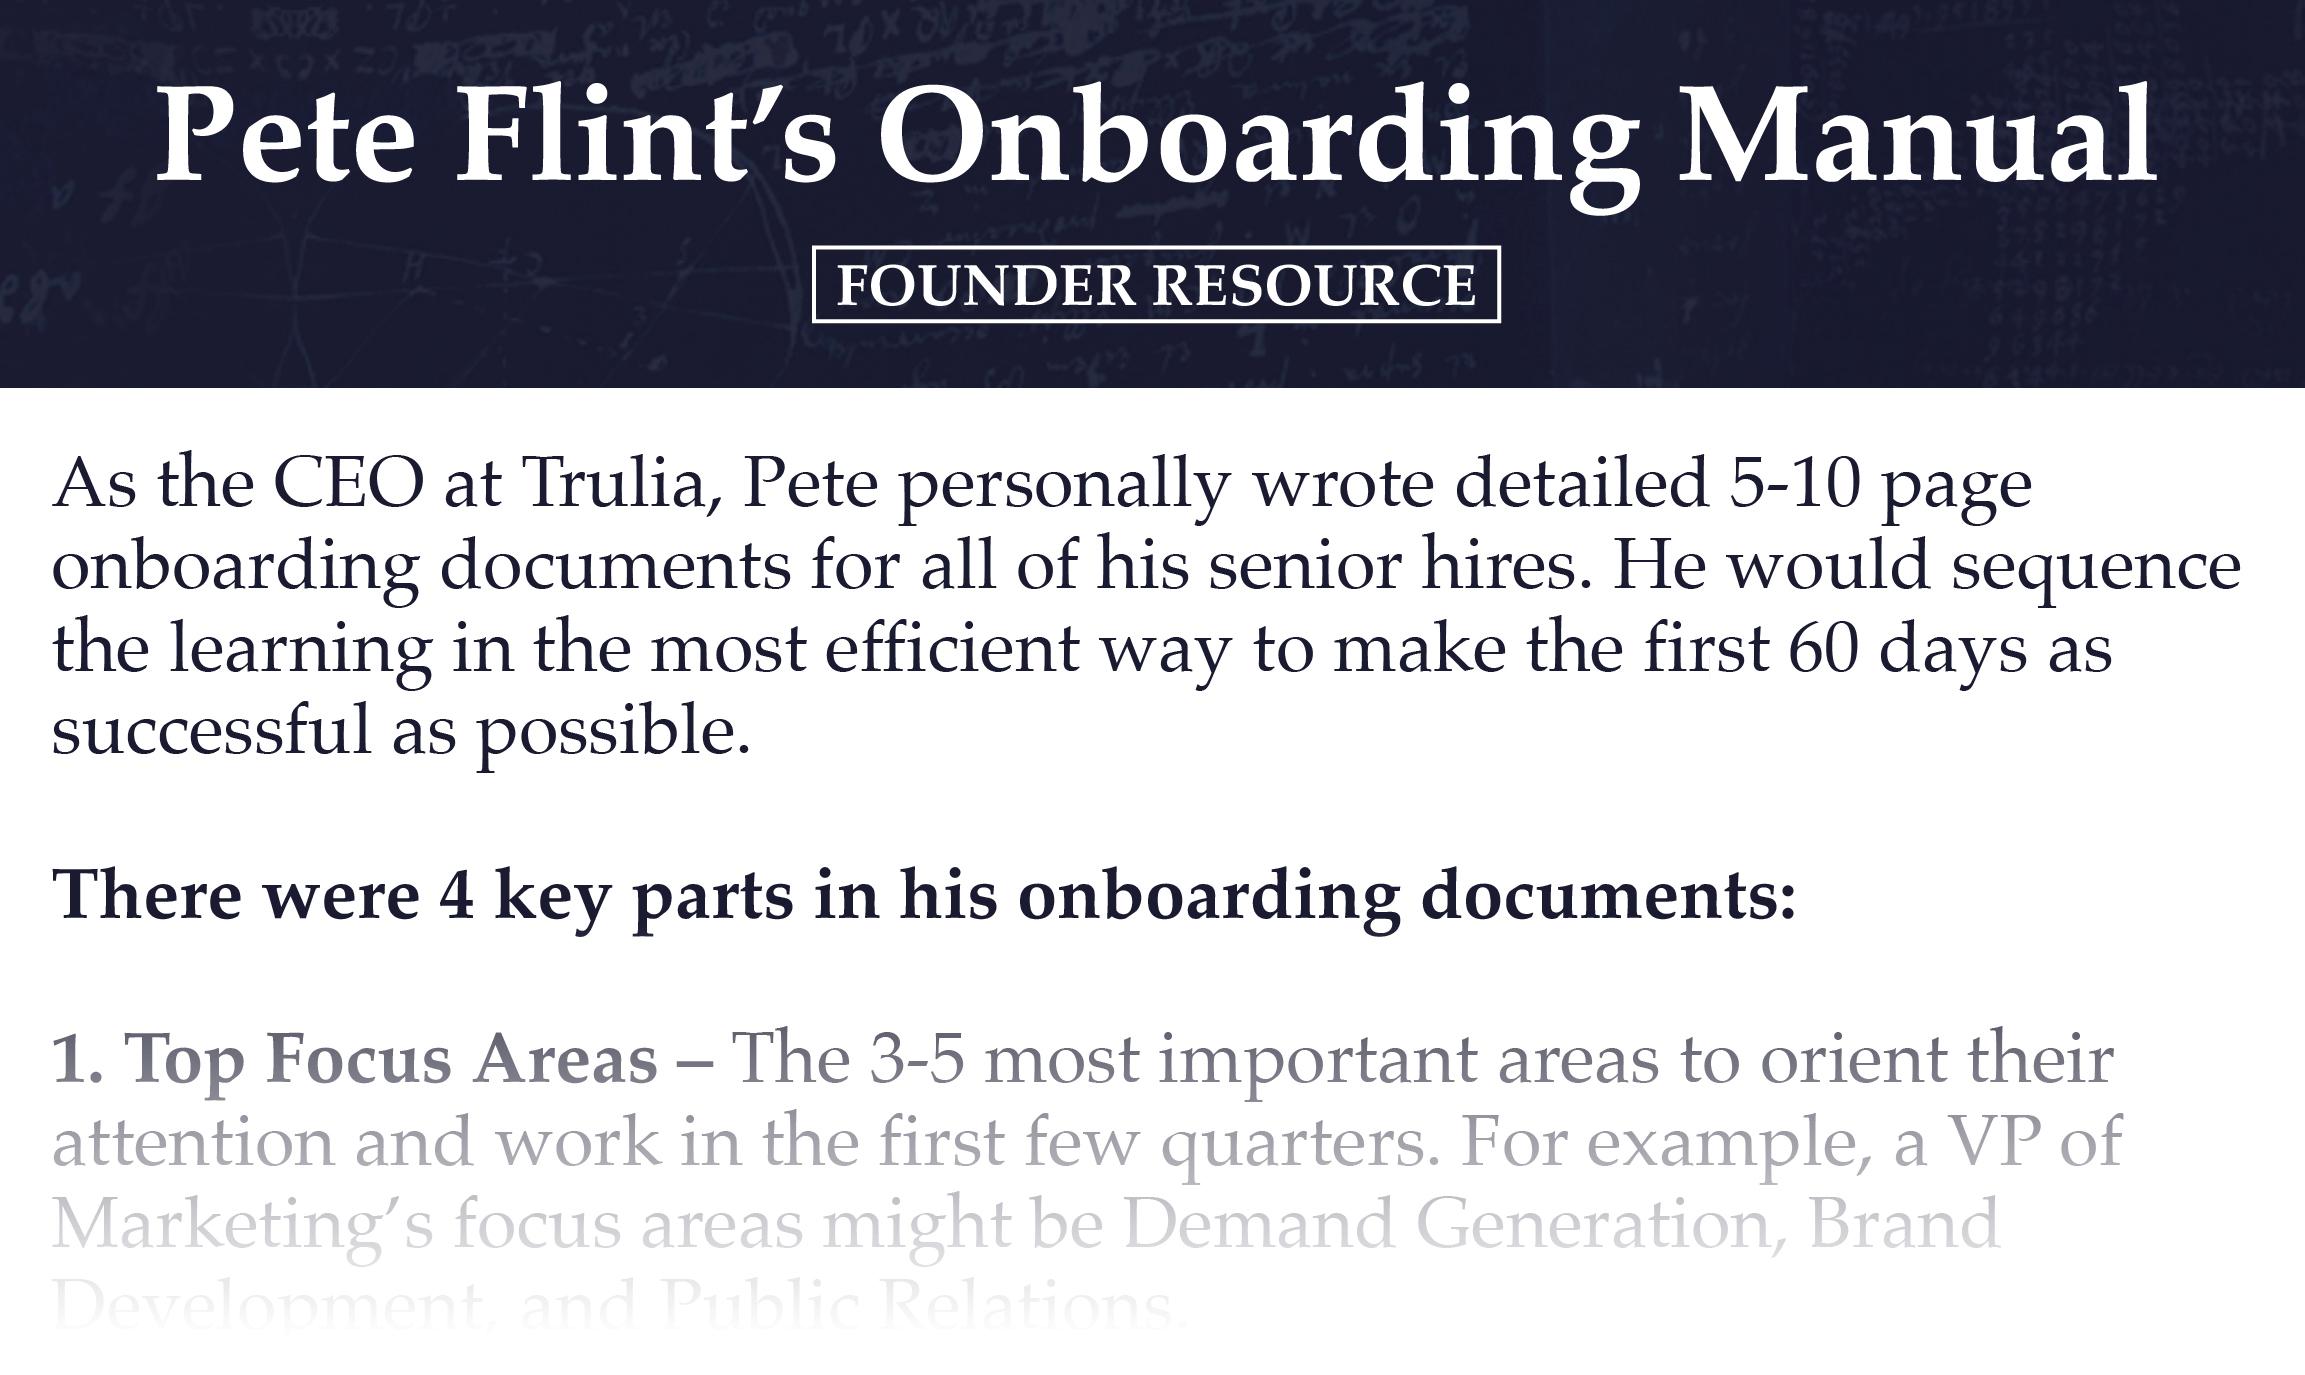 Pete Flint's Onboarding Manual